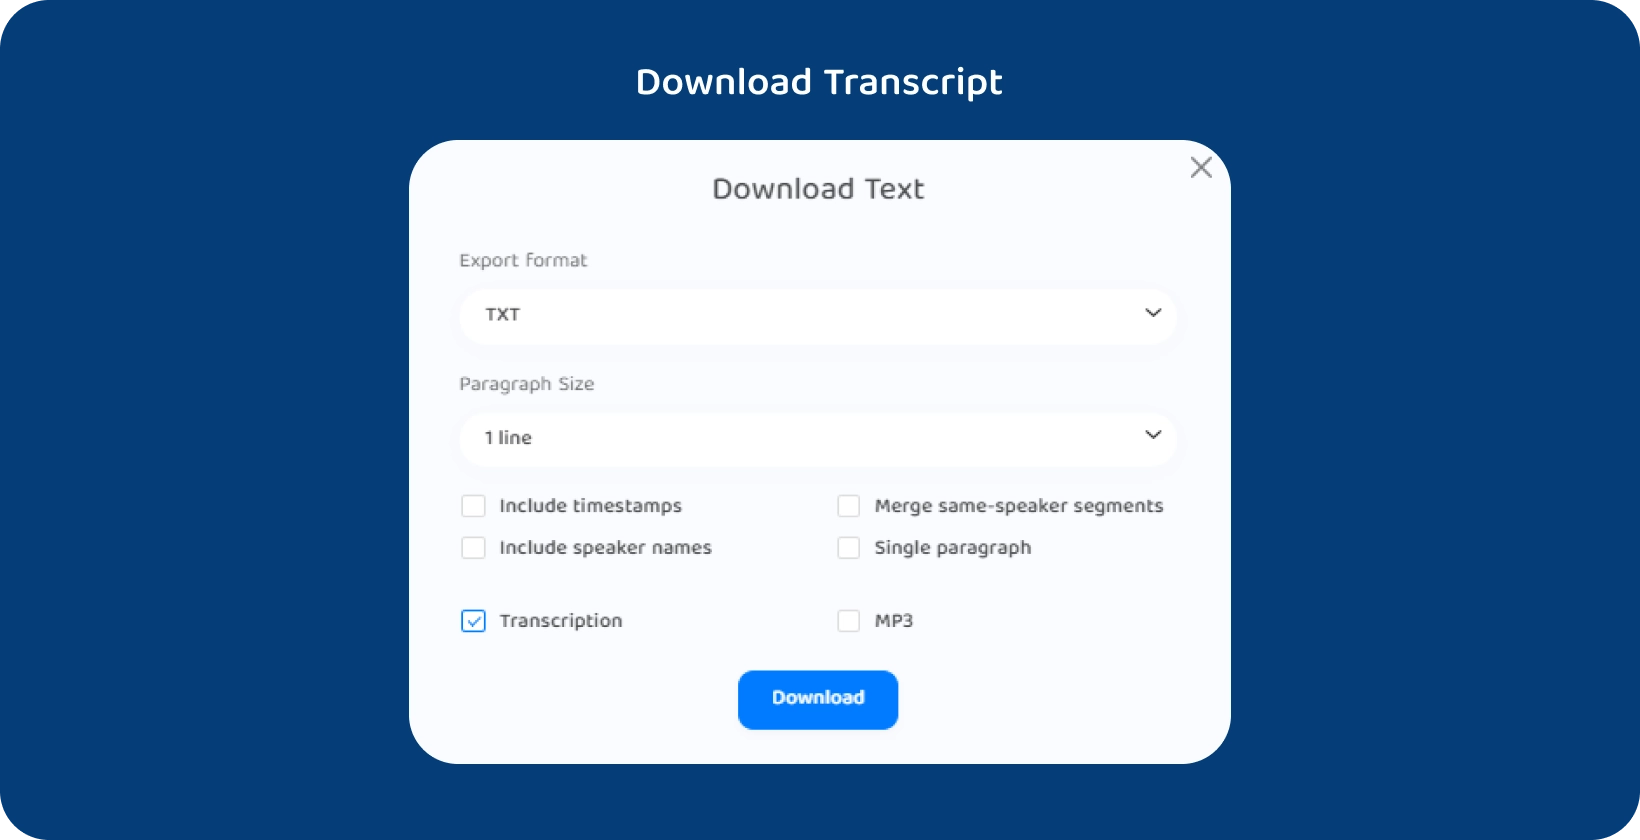 Интерфейс Transkriptor, показывающий возможности загрузки текста расшифрованной лекции.